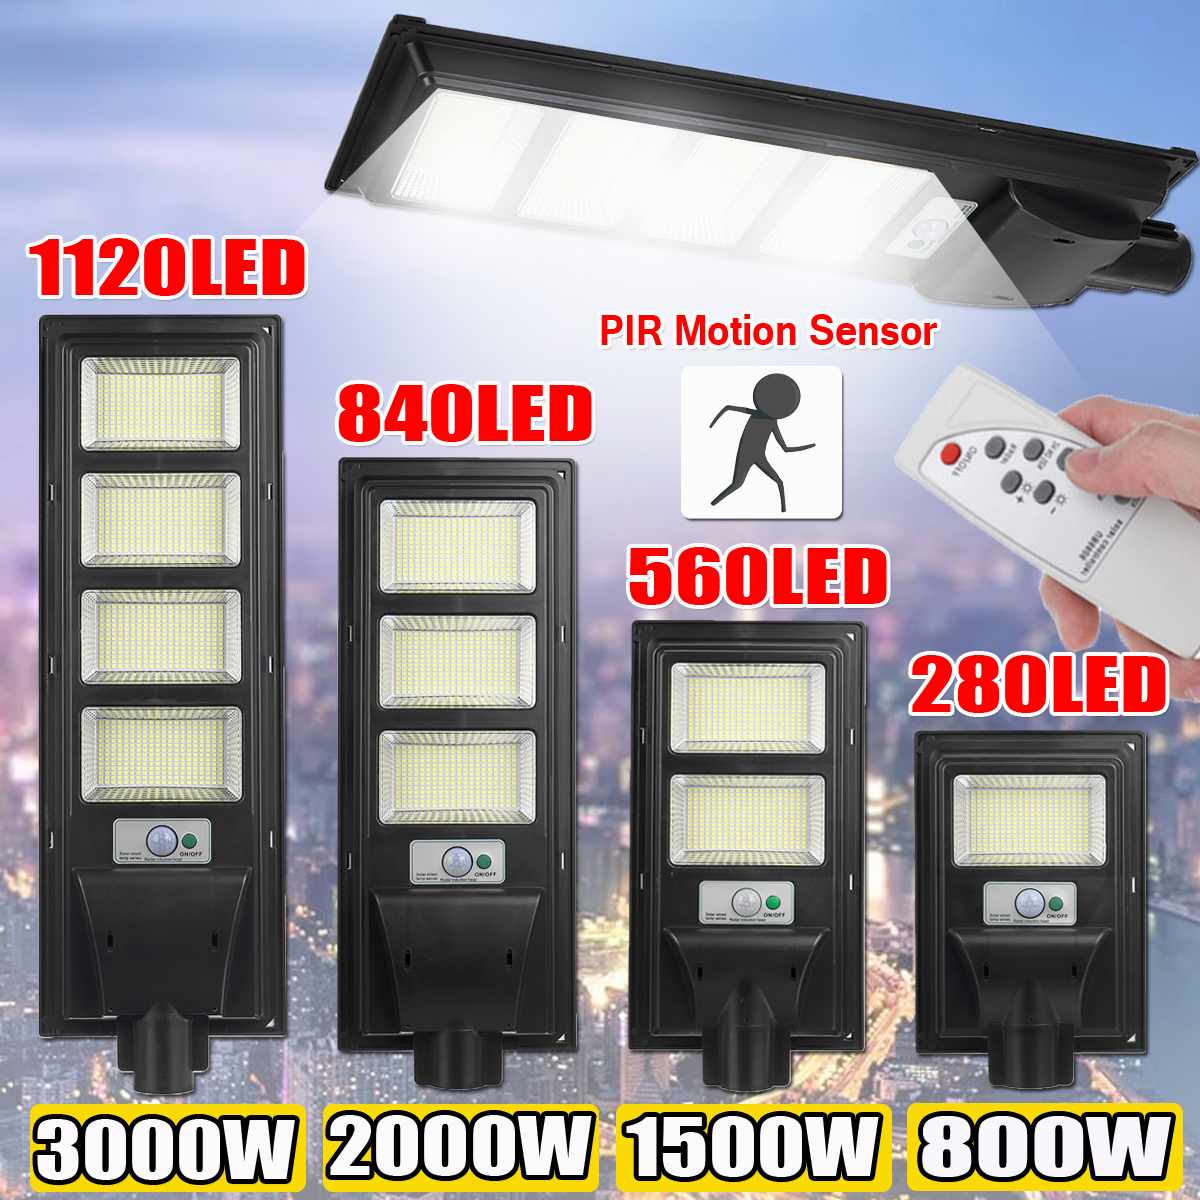 3000W LED ¾ Ÿ  IP65  ..